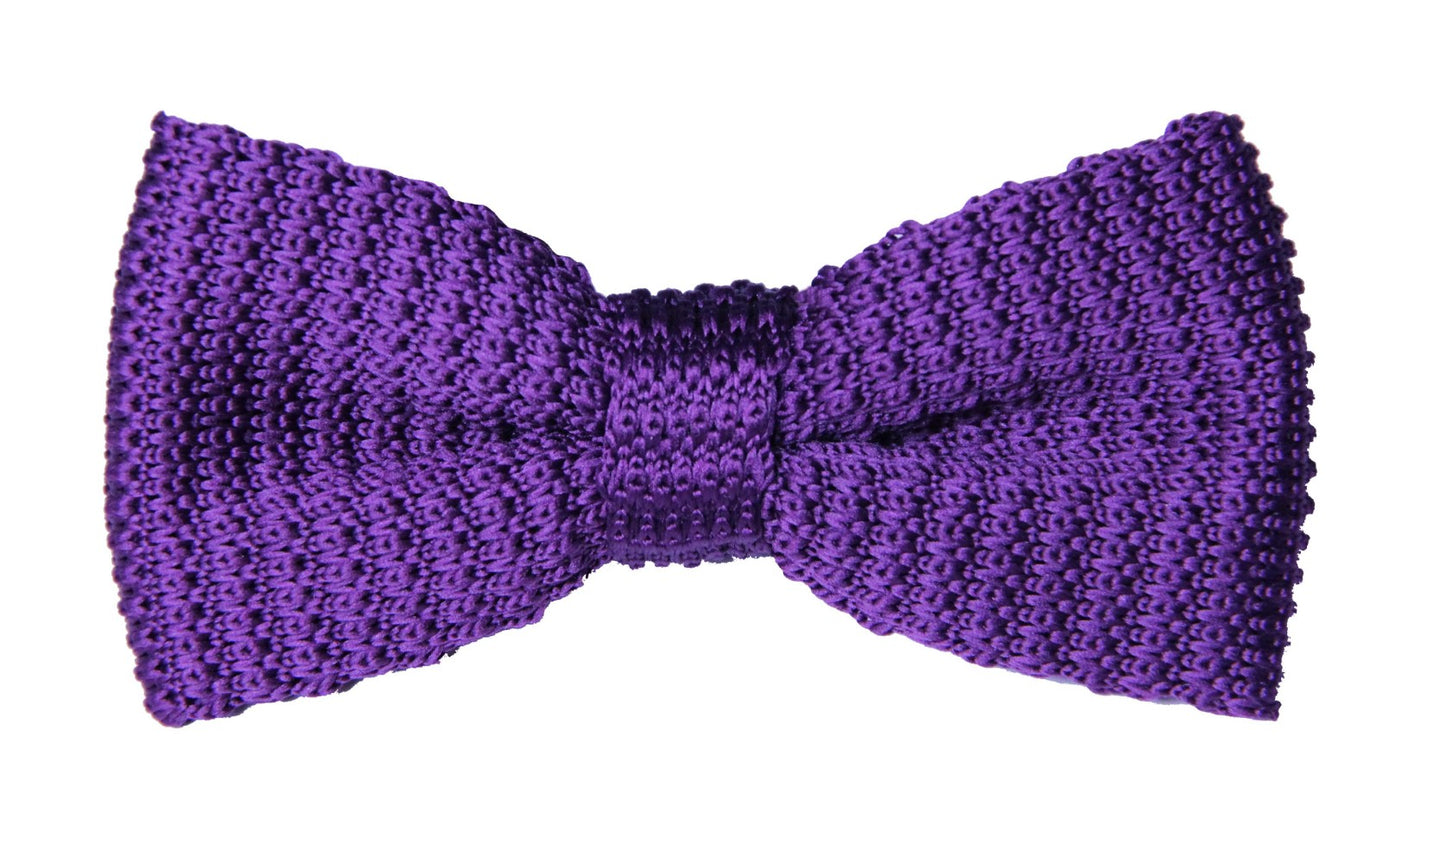 Purple Knit Bow Tie